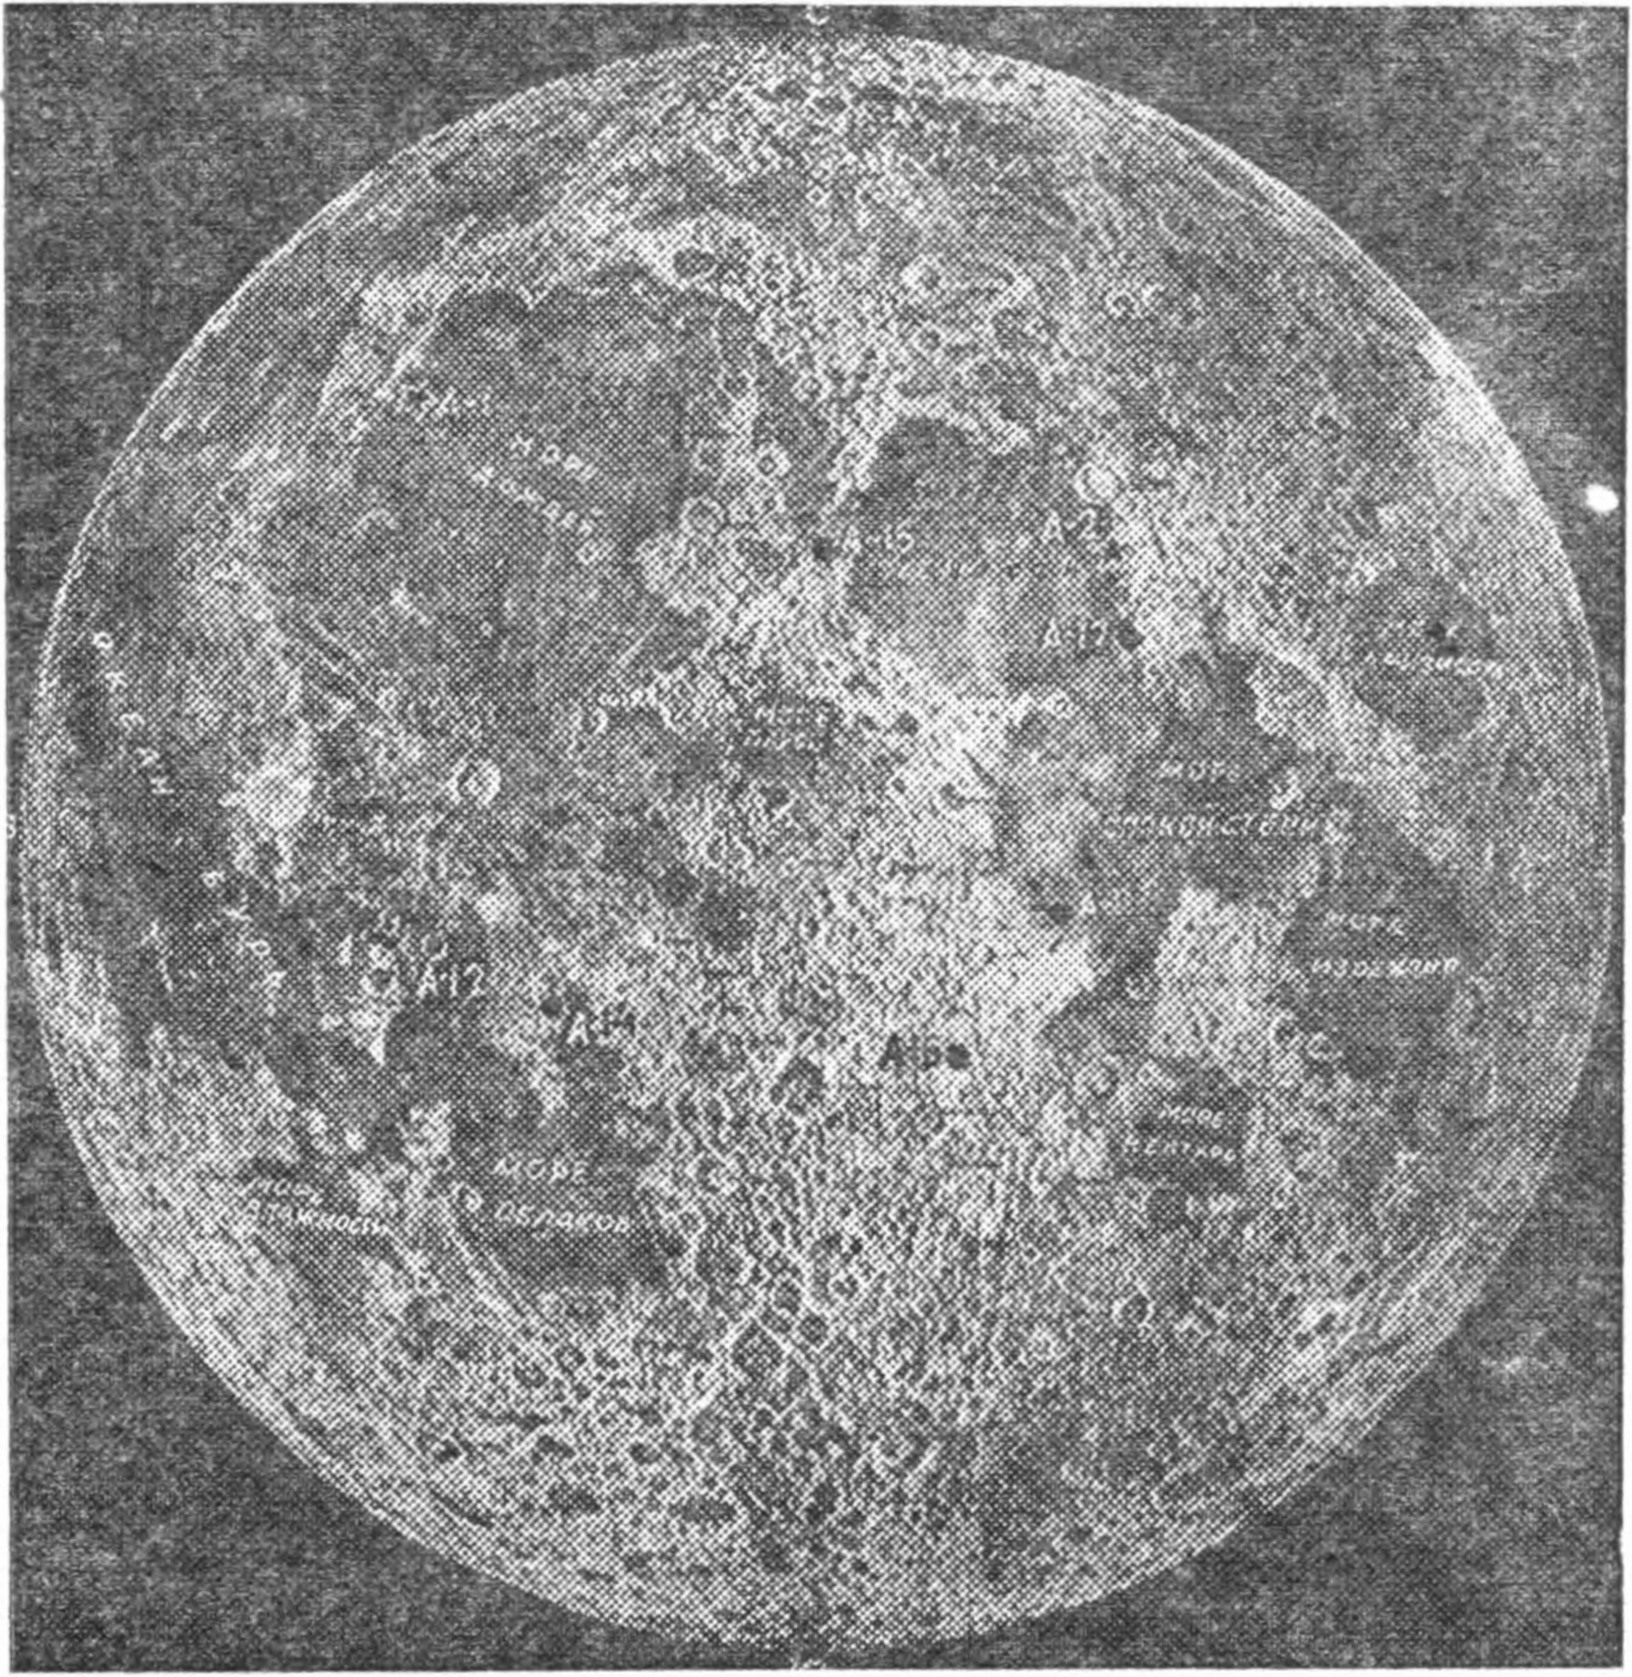 Рис. 34. Фотографическая карта видимого полушария Луны. Кружками отмечены 5 мест высадки космонавтов («Аполлон»), а звездочками — места посадки «Луноходов-1 и 2»